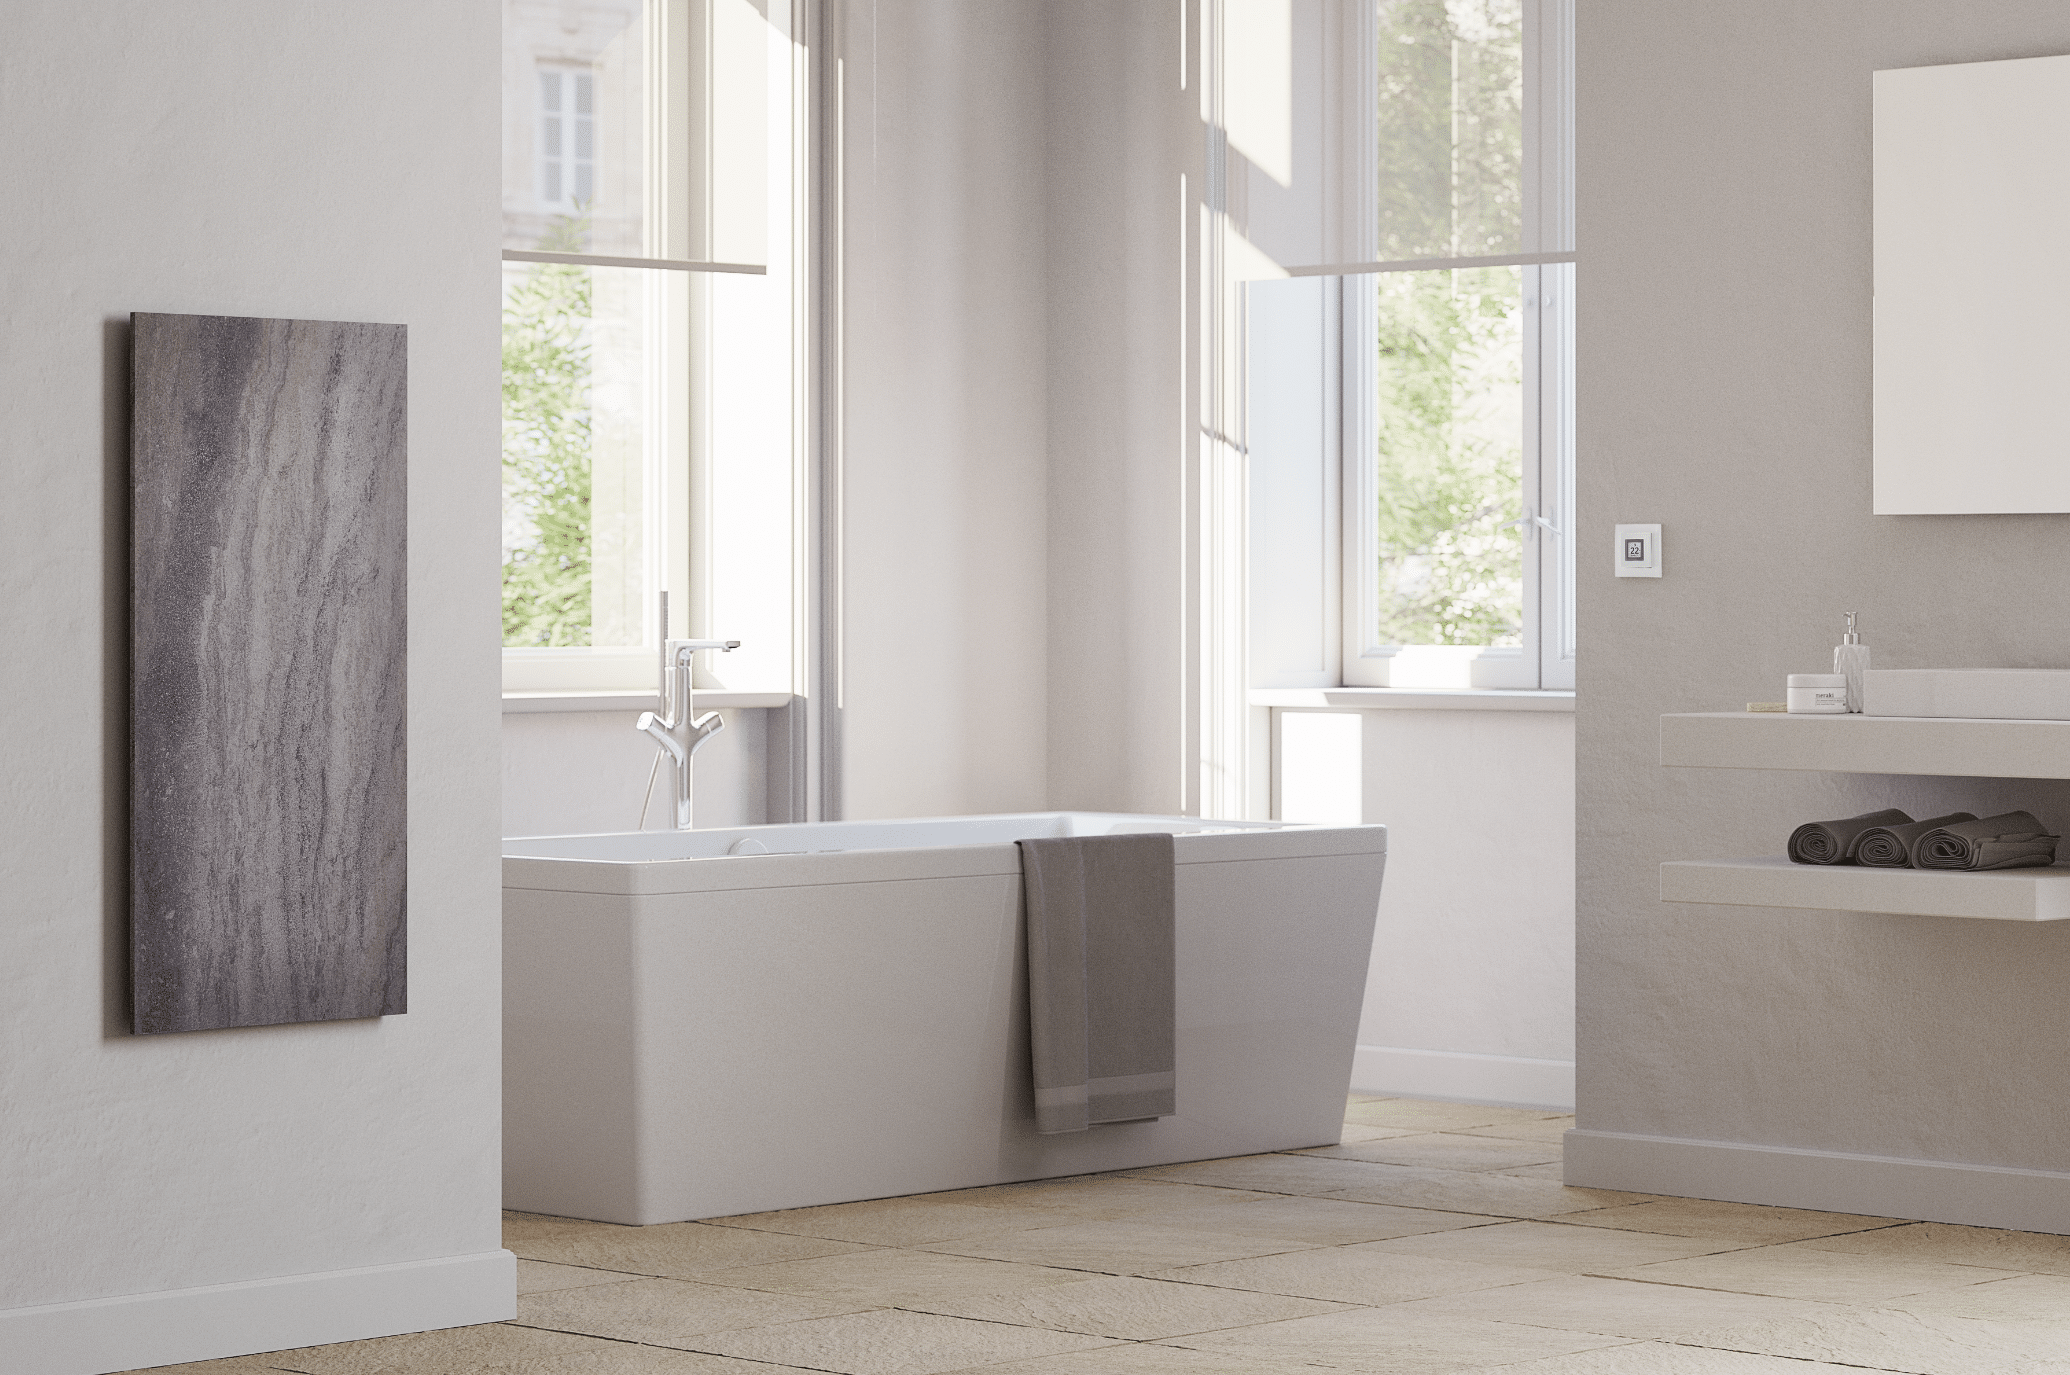 Dimplex zeigt ein helles Badezimmer mit beigem Fliesenboden, freistehender Badewanne mit silbernen Armaturen und einem eckigen Waschtisch mit modernem, an der Wand angebrachten Heizkörper mit Muster.